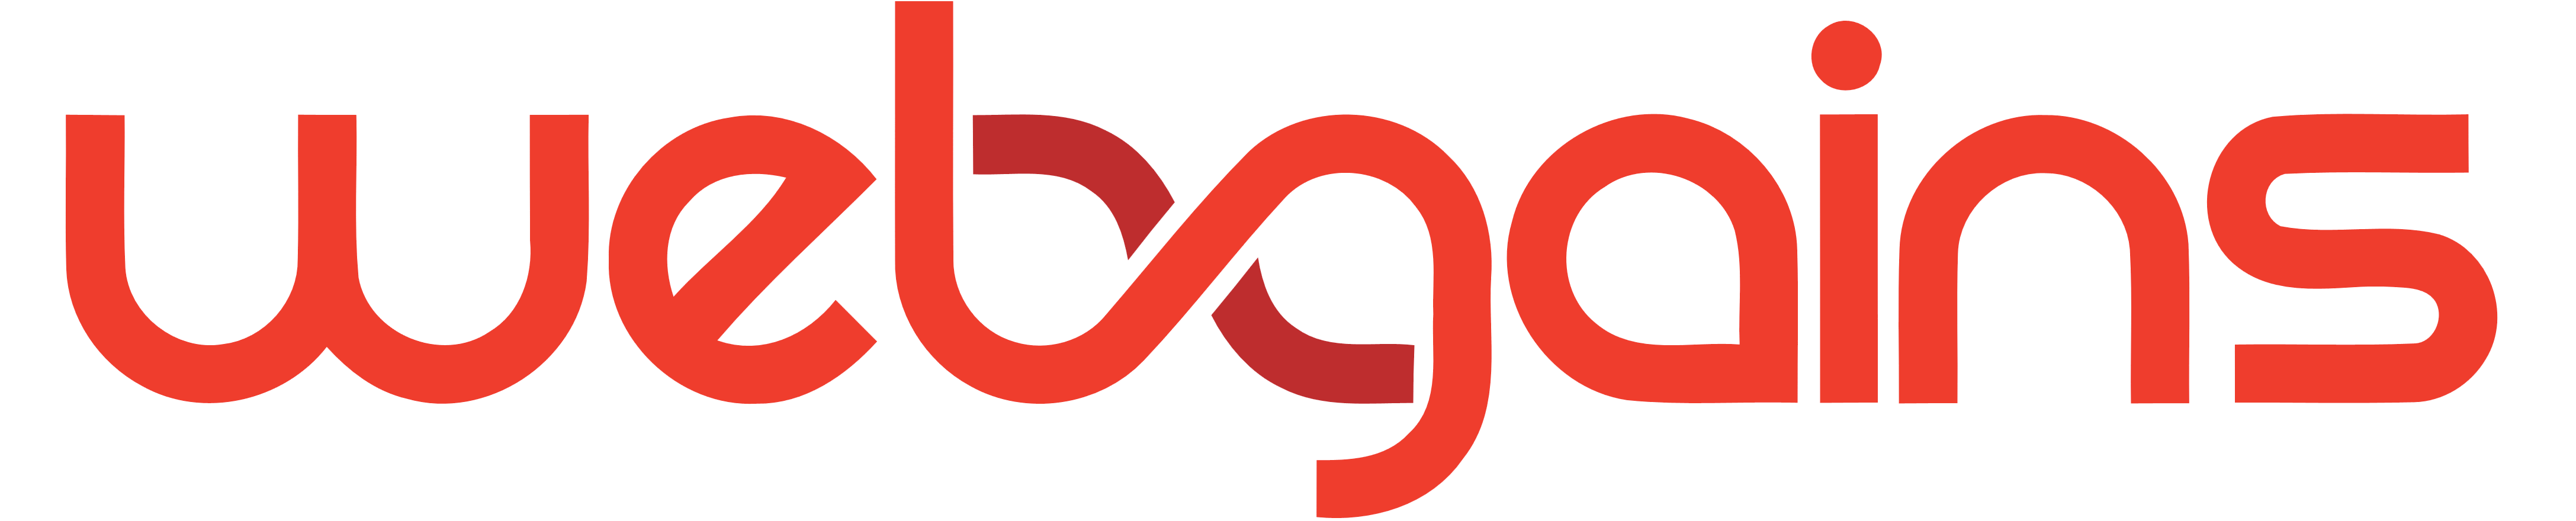 webgains logo in red